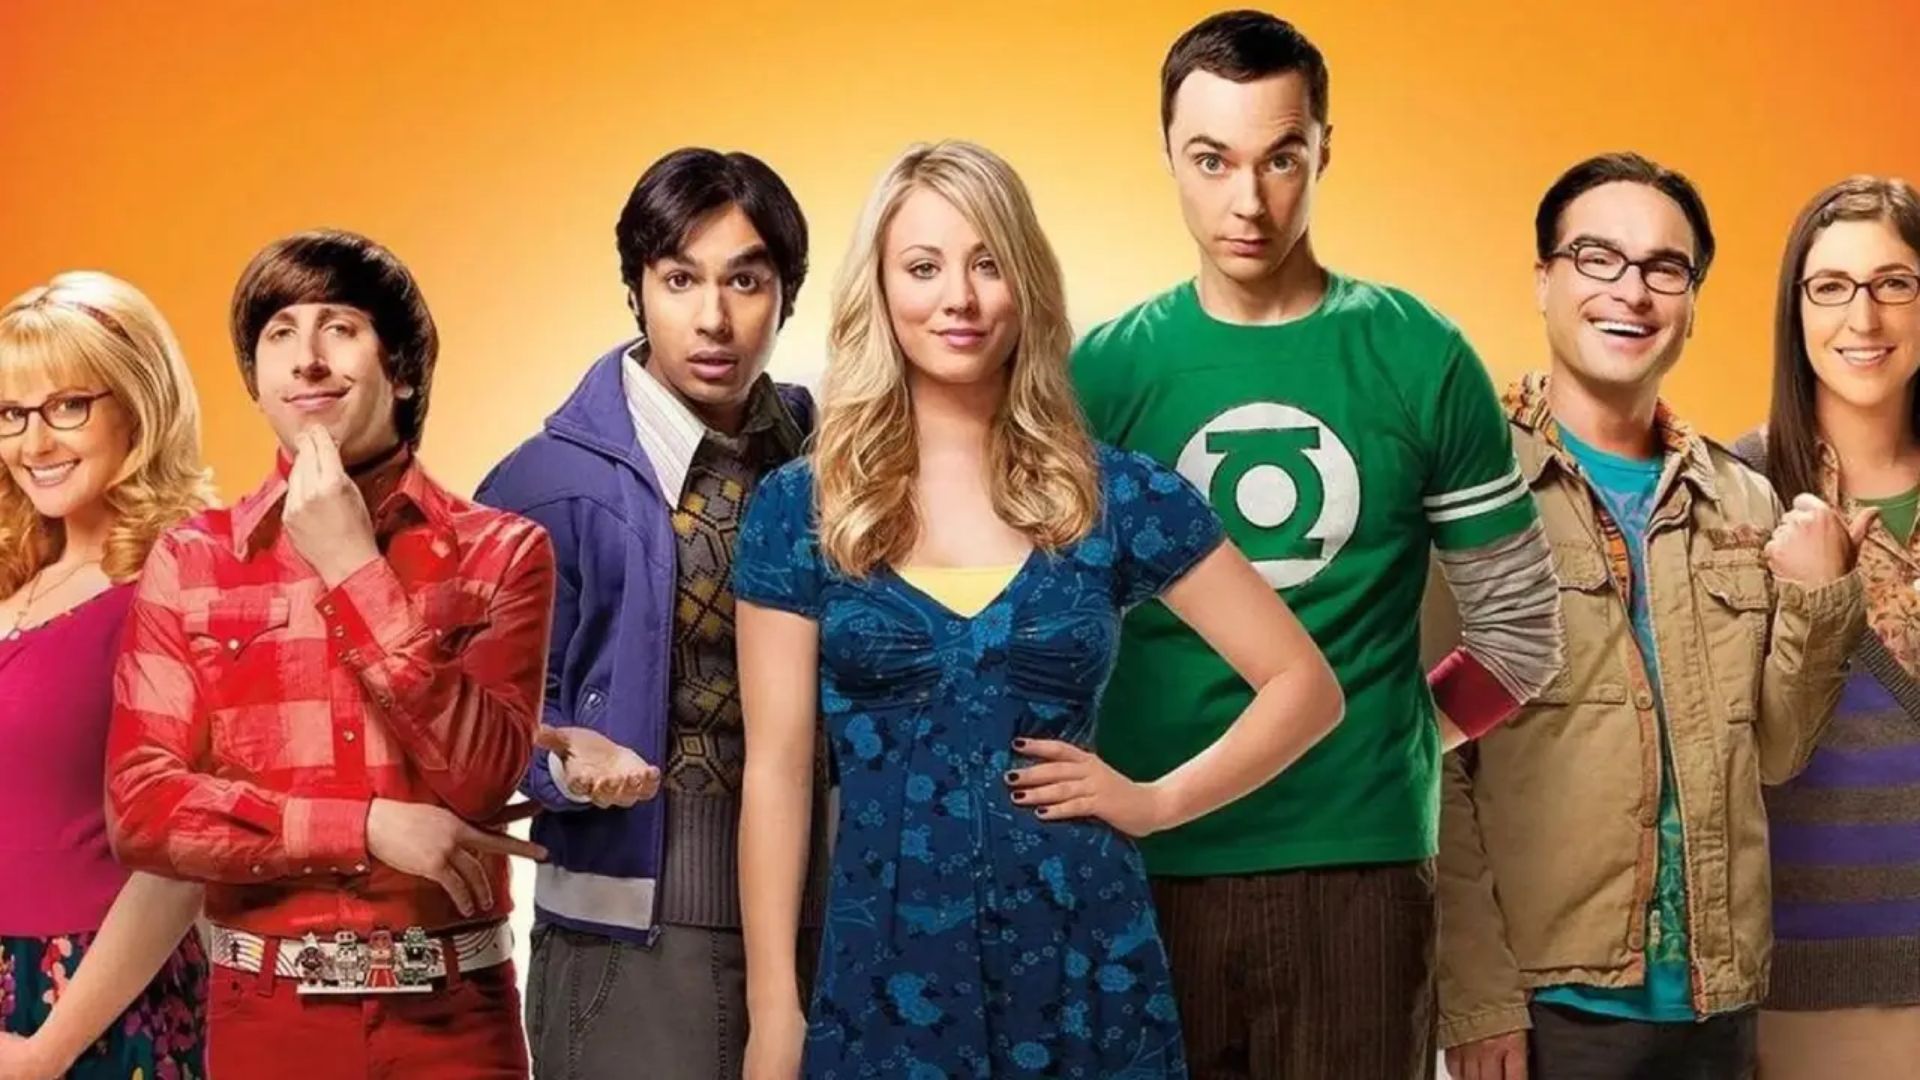 A Teoria do Big Bang Temporada 4 - assista episódios online streaming